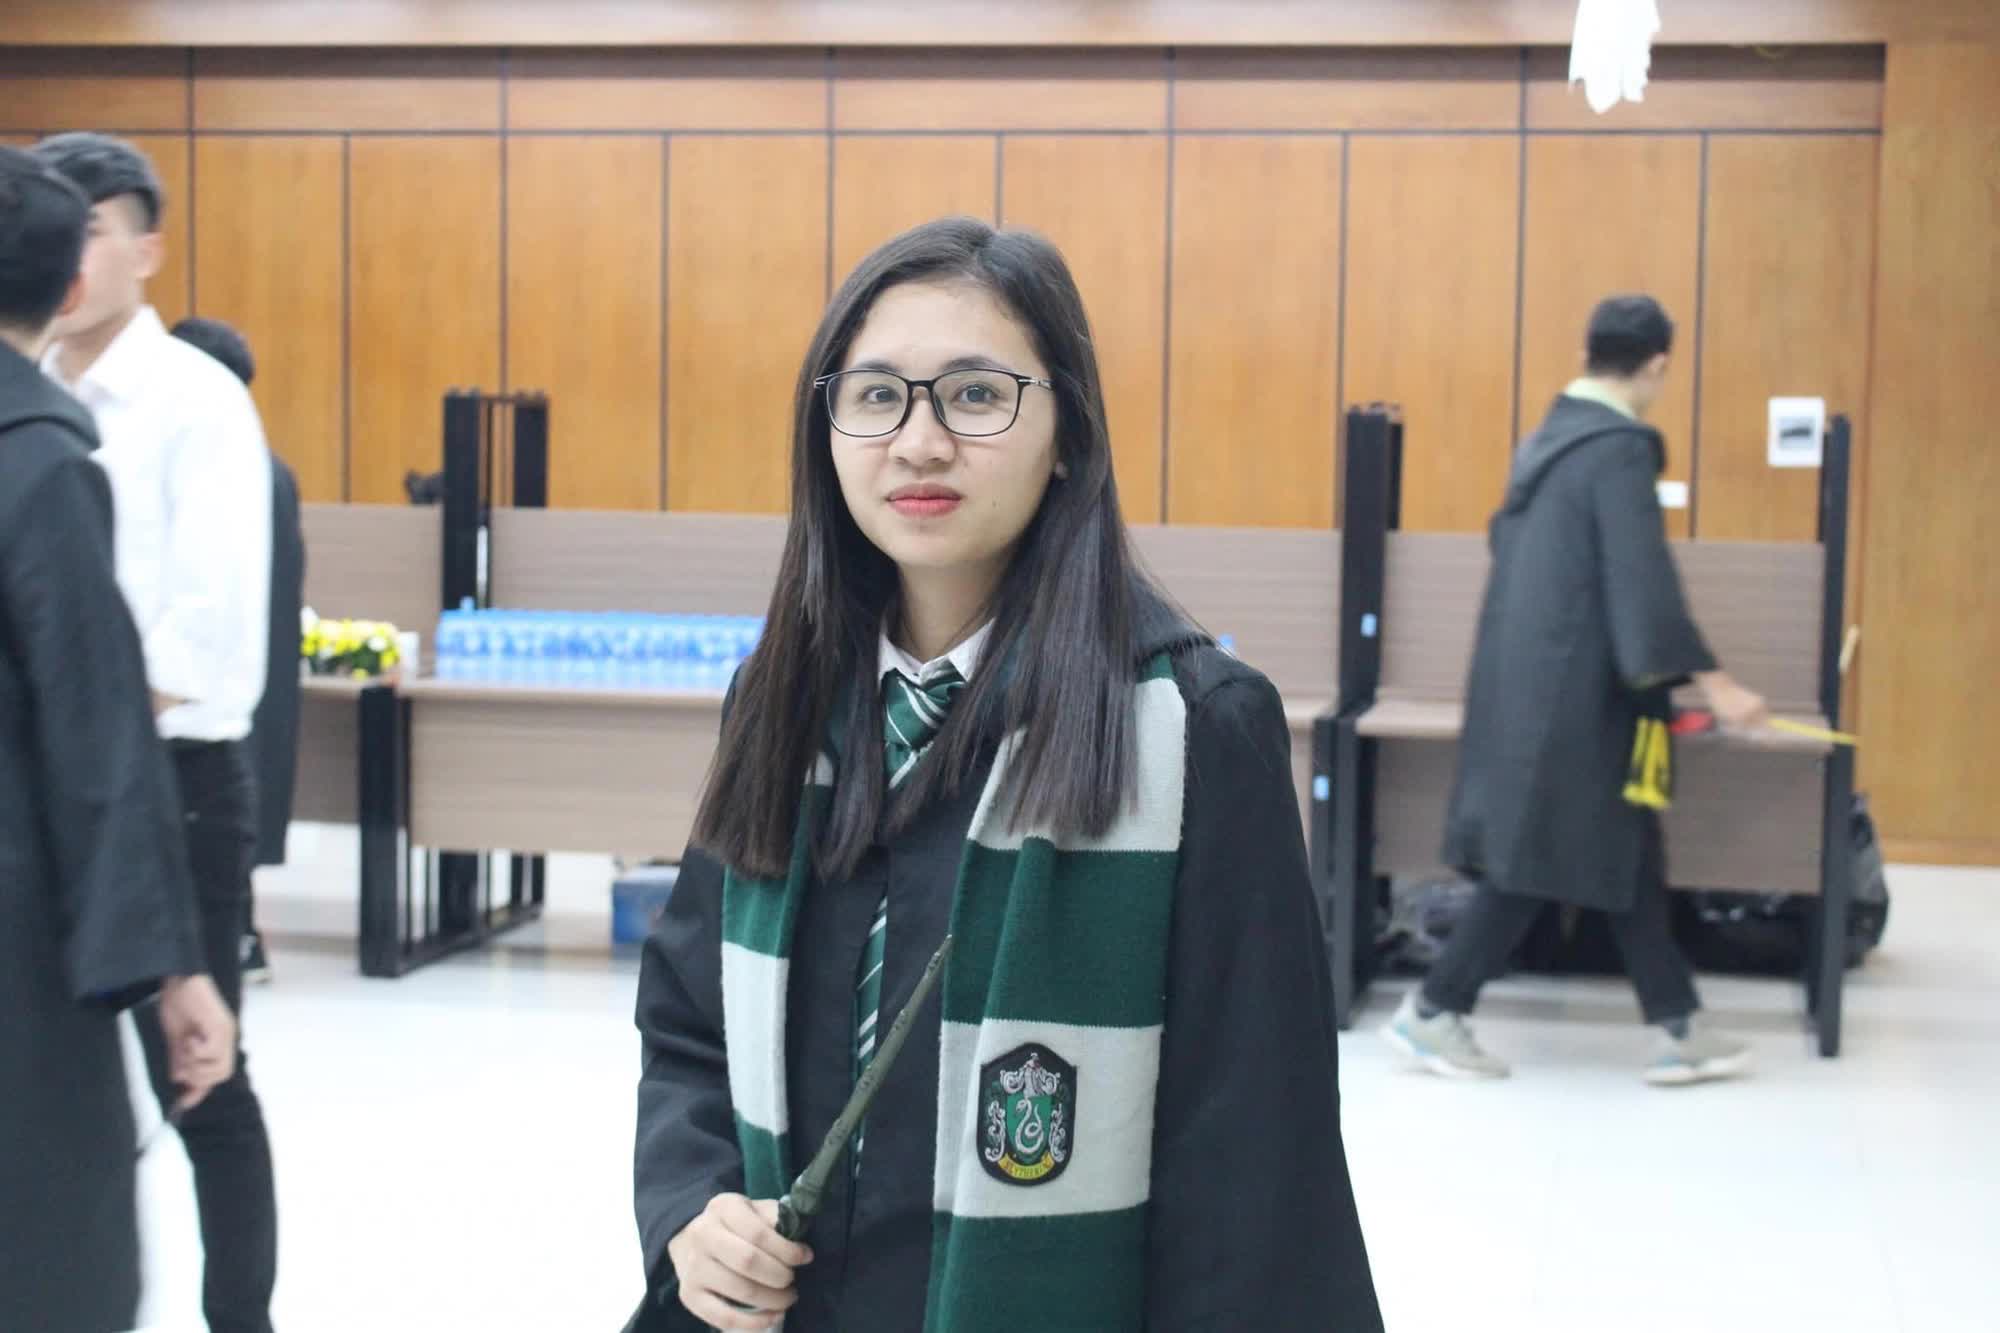 Từ bỏ Đại học khi còn 1 năm tốt nghiệp, nữ sinh Quảng Ninh quyết tâm đi du học và cái kết ngọt ngào - Ảnh 3.